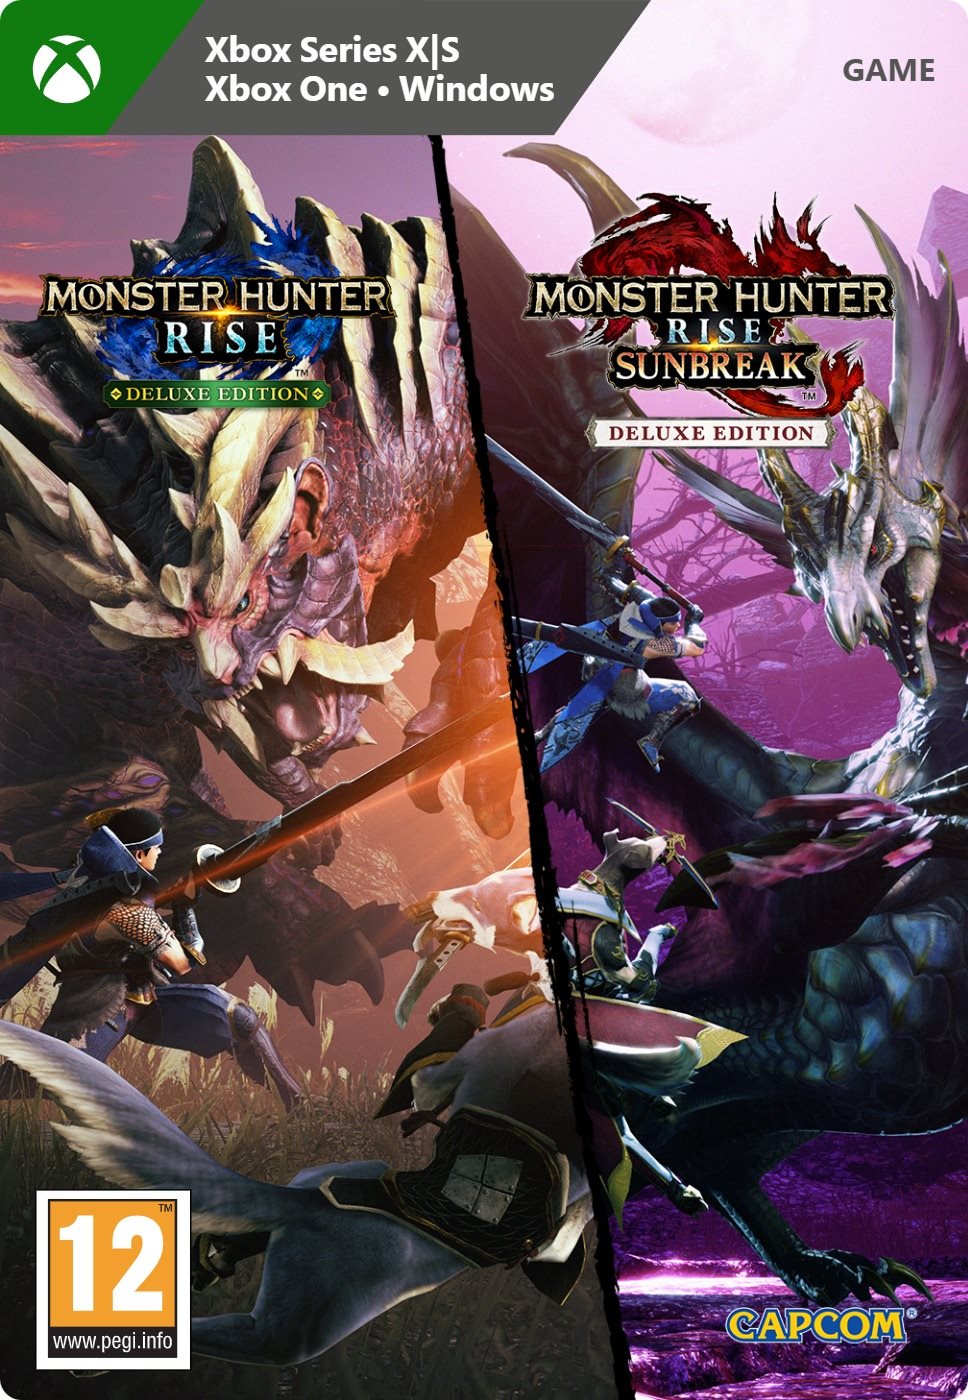 Monster Hunter Rise + Sunbreak Deluxe Edition - Xbox / Windows Digital